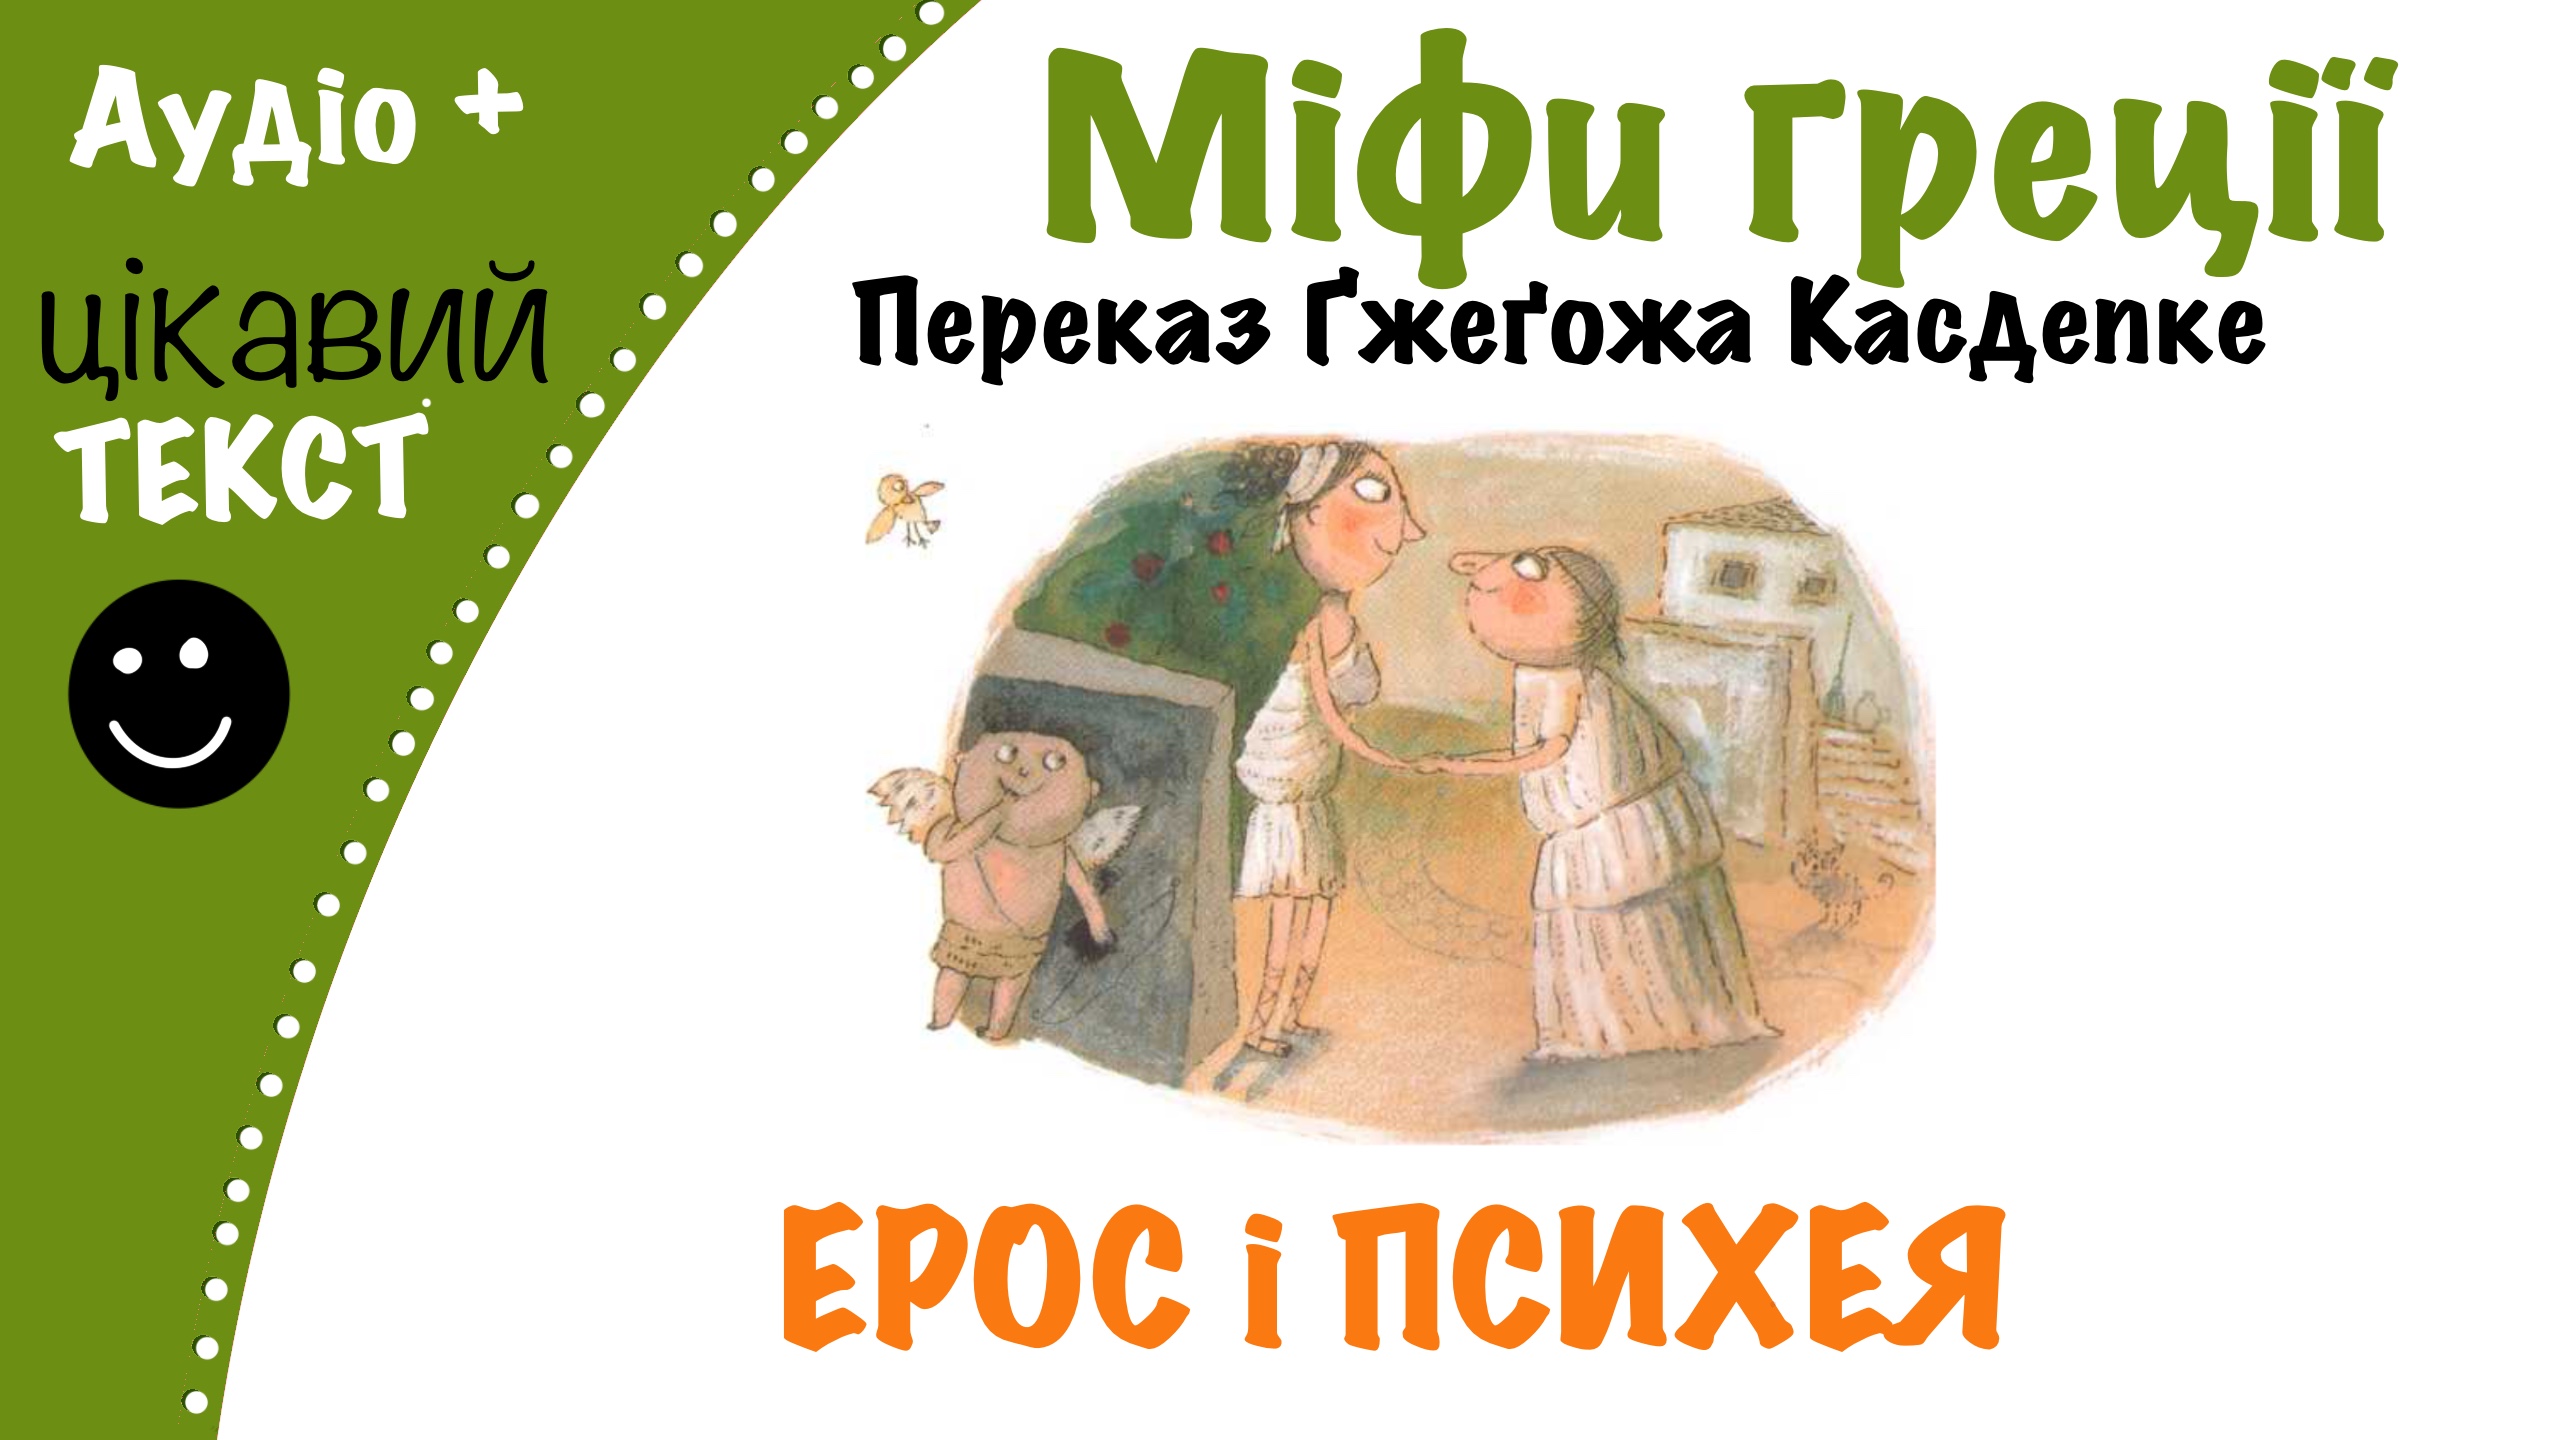 Перейти до: Грецький міф про Ероса та Психею. Переказ Ґжеґожа Касдепке